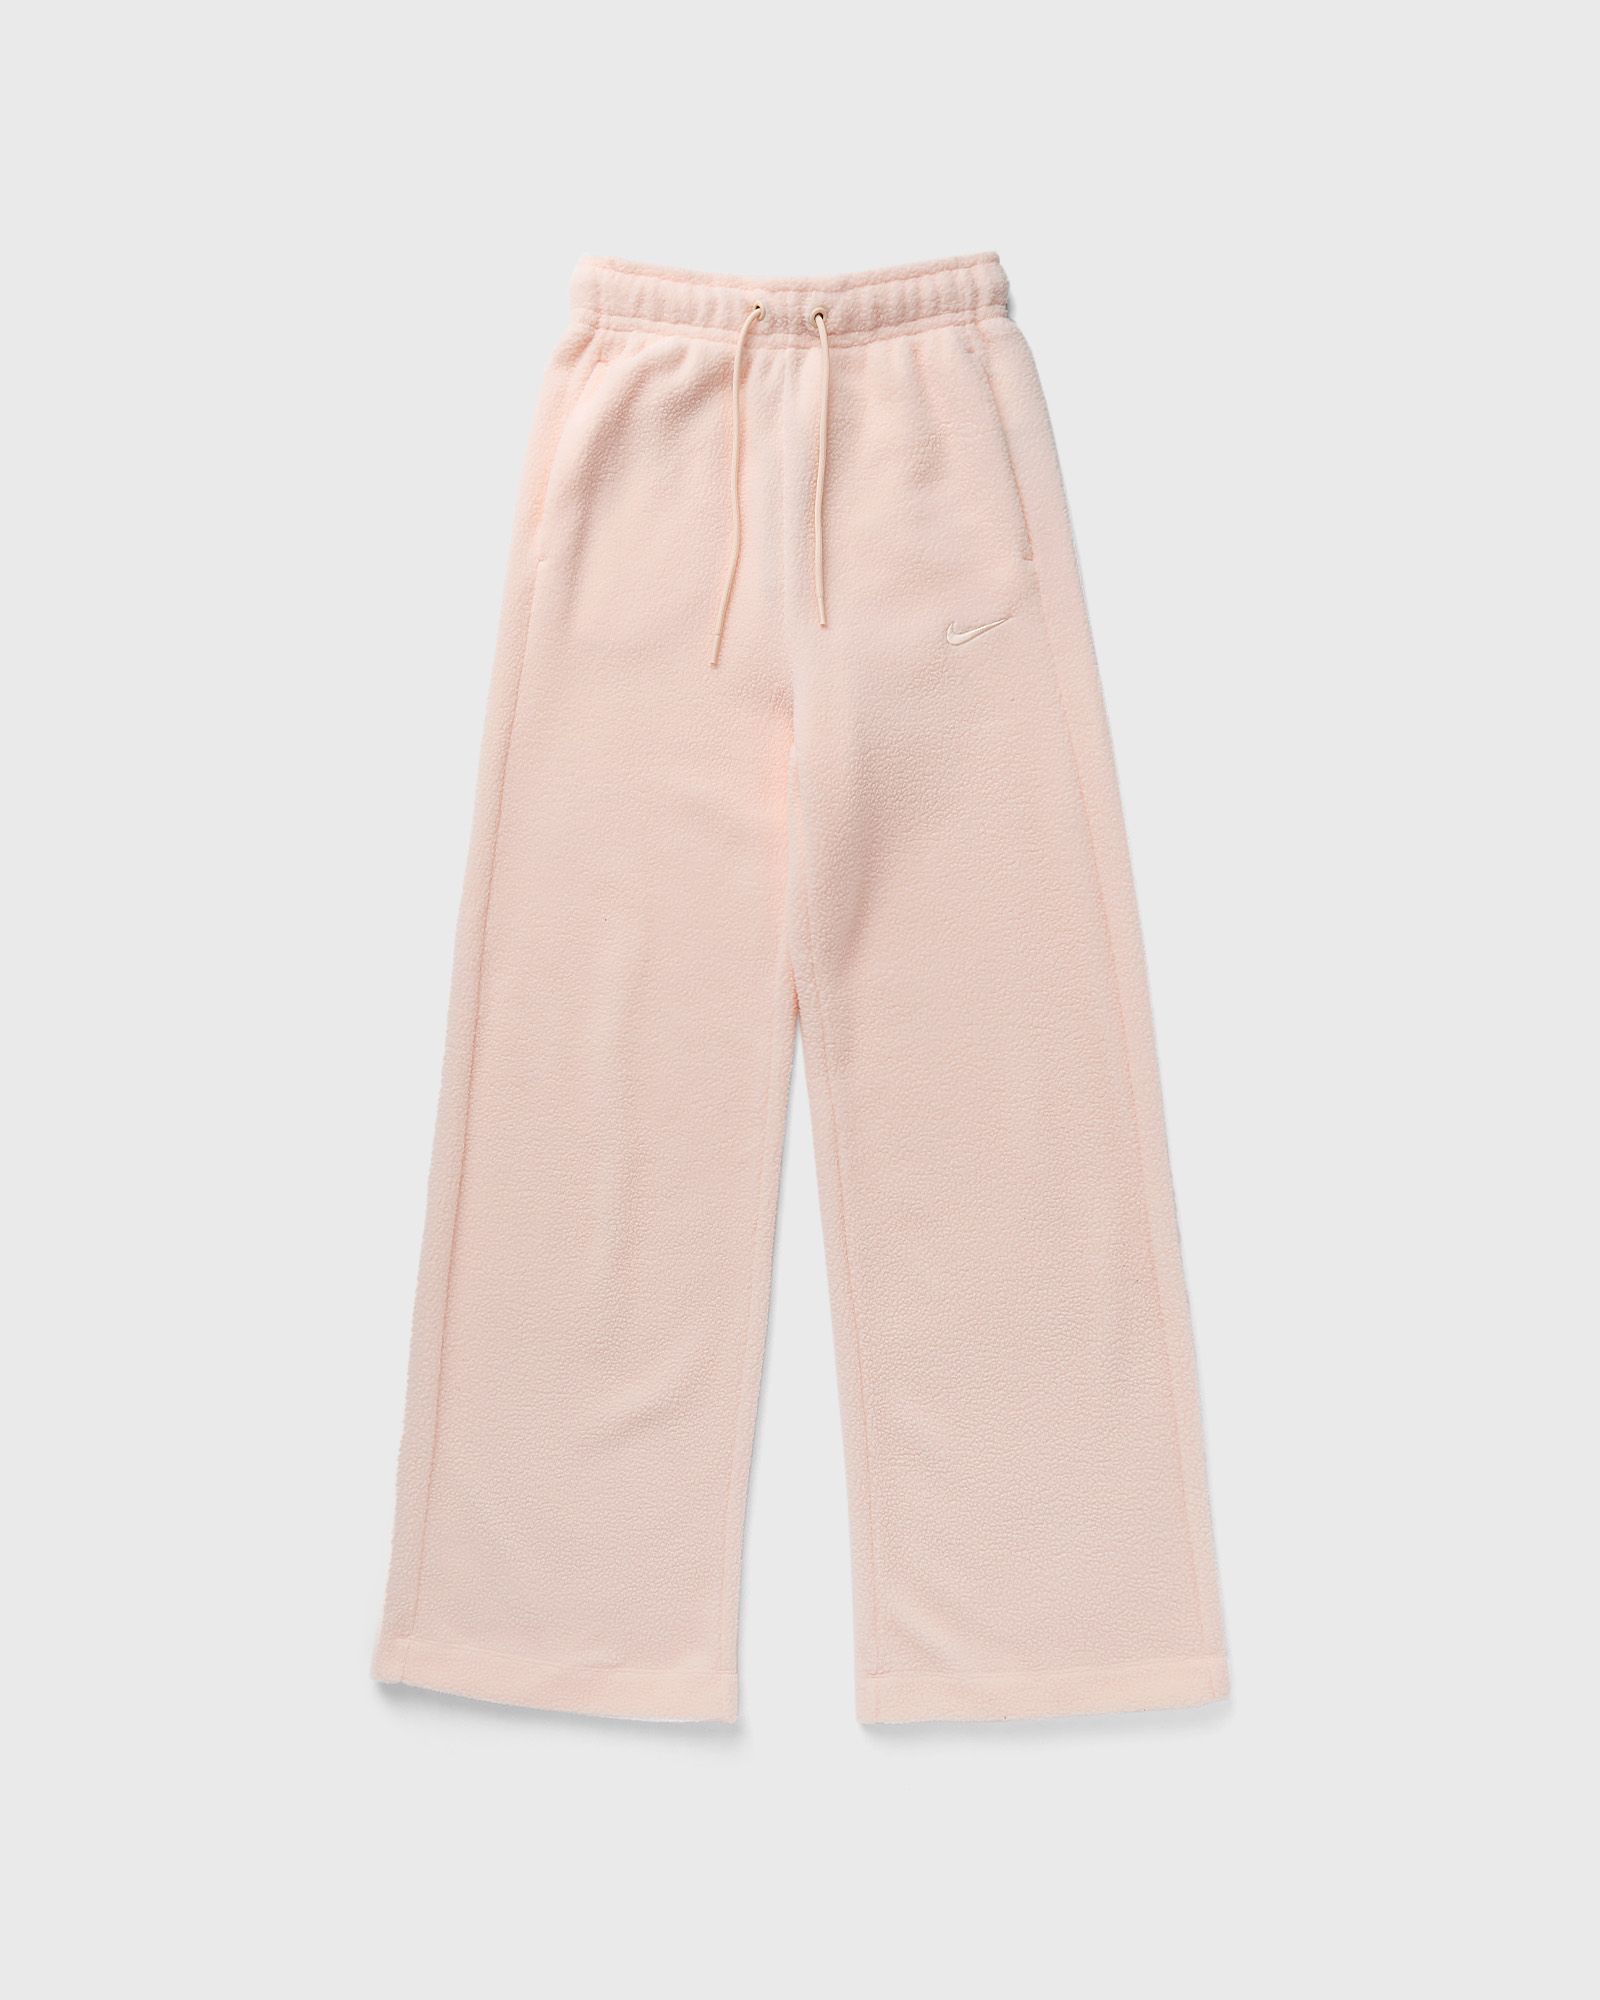 Nike - sportswear plush women's pants women casual pants pink in größe:s